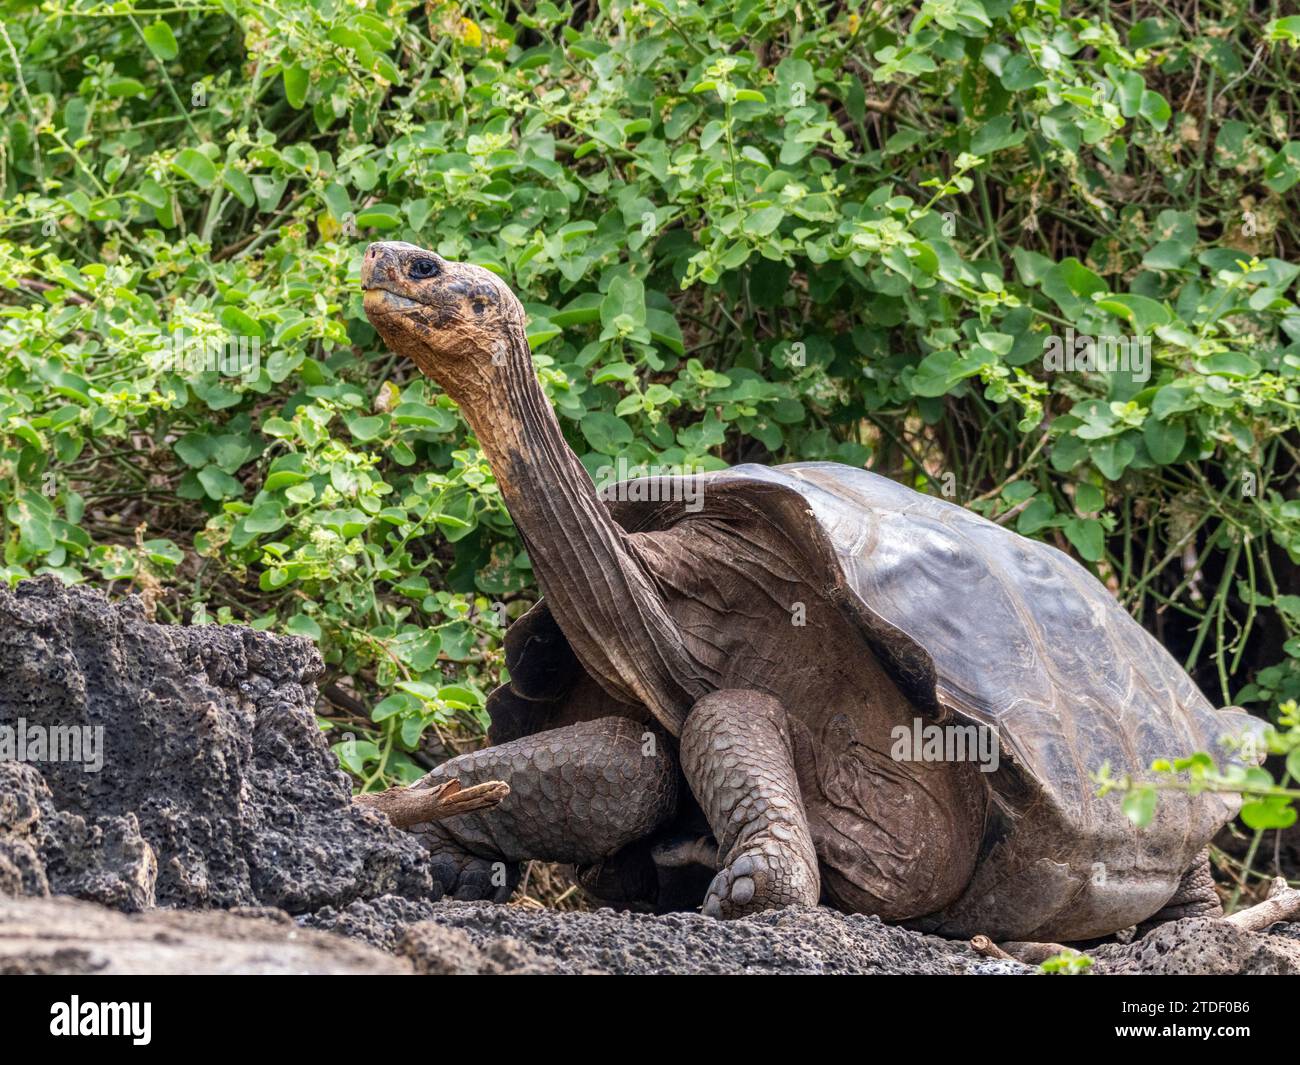 Tortue géante captive des Galapagos (Chelonoidis spp), station de recherche Charles Darwin, île Santa Cruz, îles Galapagos, site du patrimoine mondial de l'UNESCO Banque D'Images